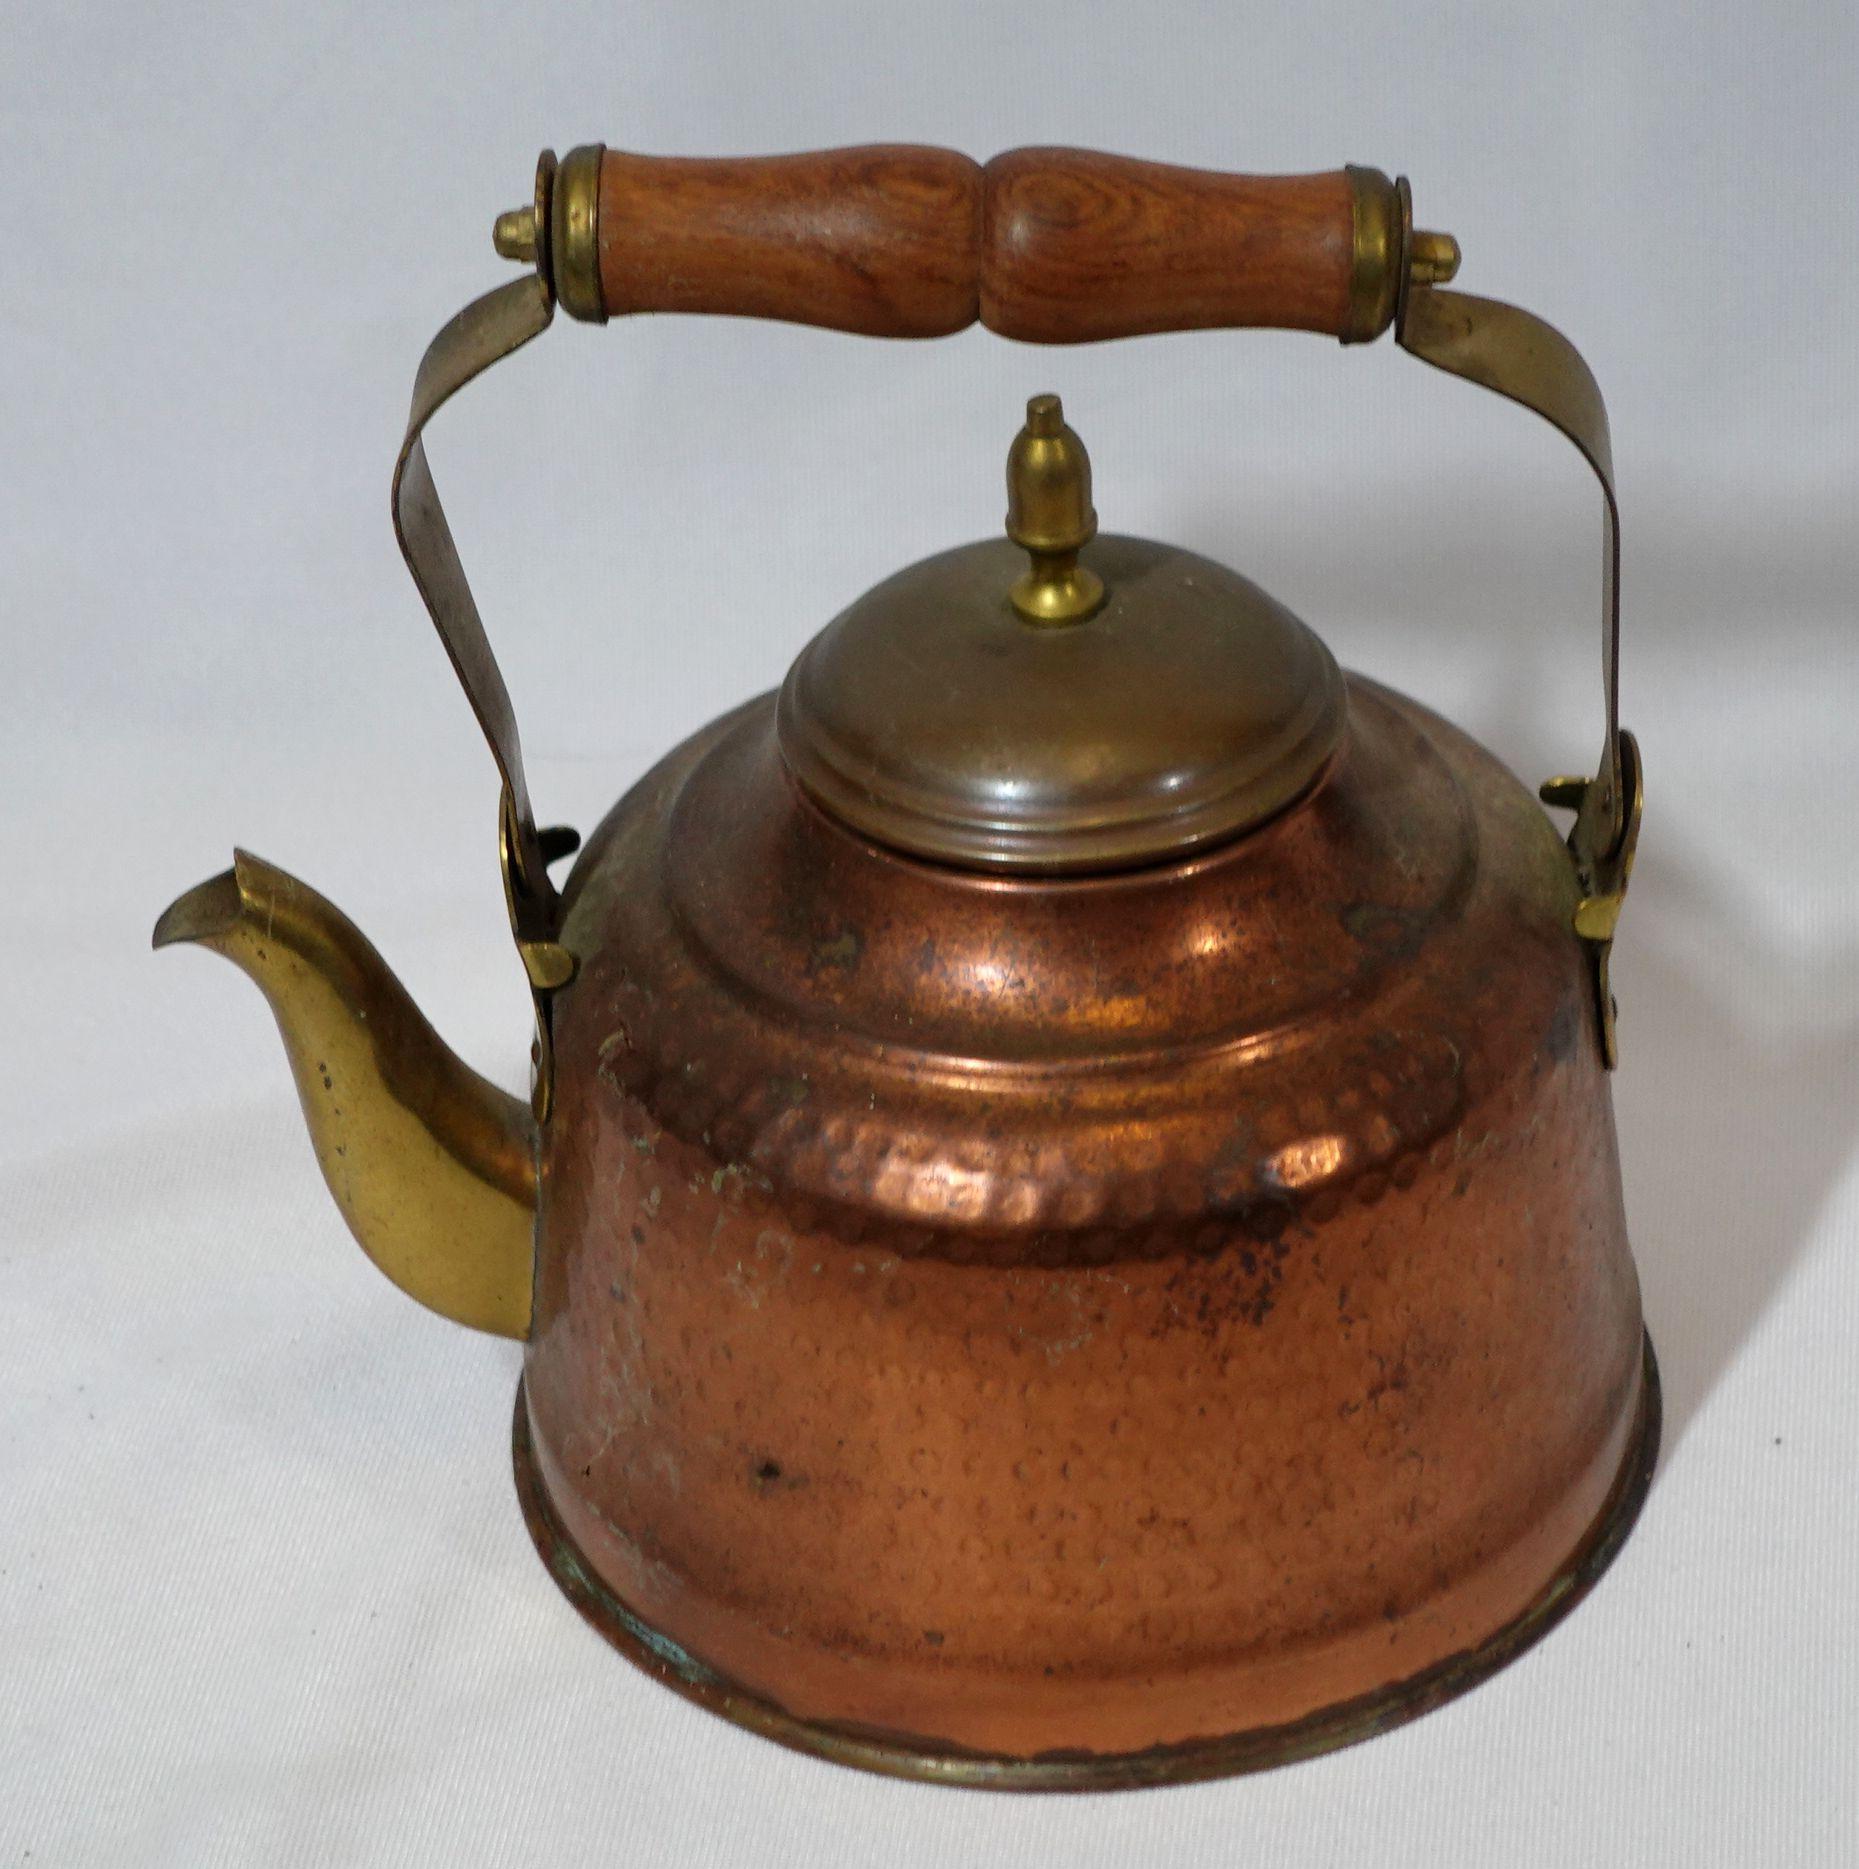 Handgehämmerter Teekessel aus Kupfer und Messing, hergestellt in Indien zu Beginn des 20. Jahrhunderts, sehr gut handgefertigt mit feiner Handwerkskunst, und sehr sammelwürdige Antiquität.
